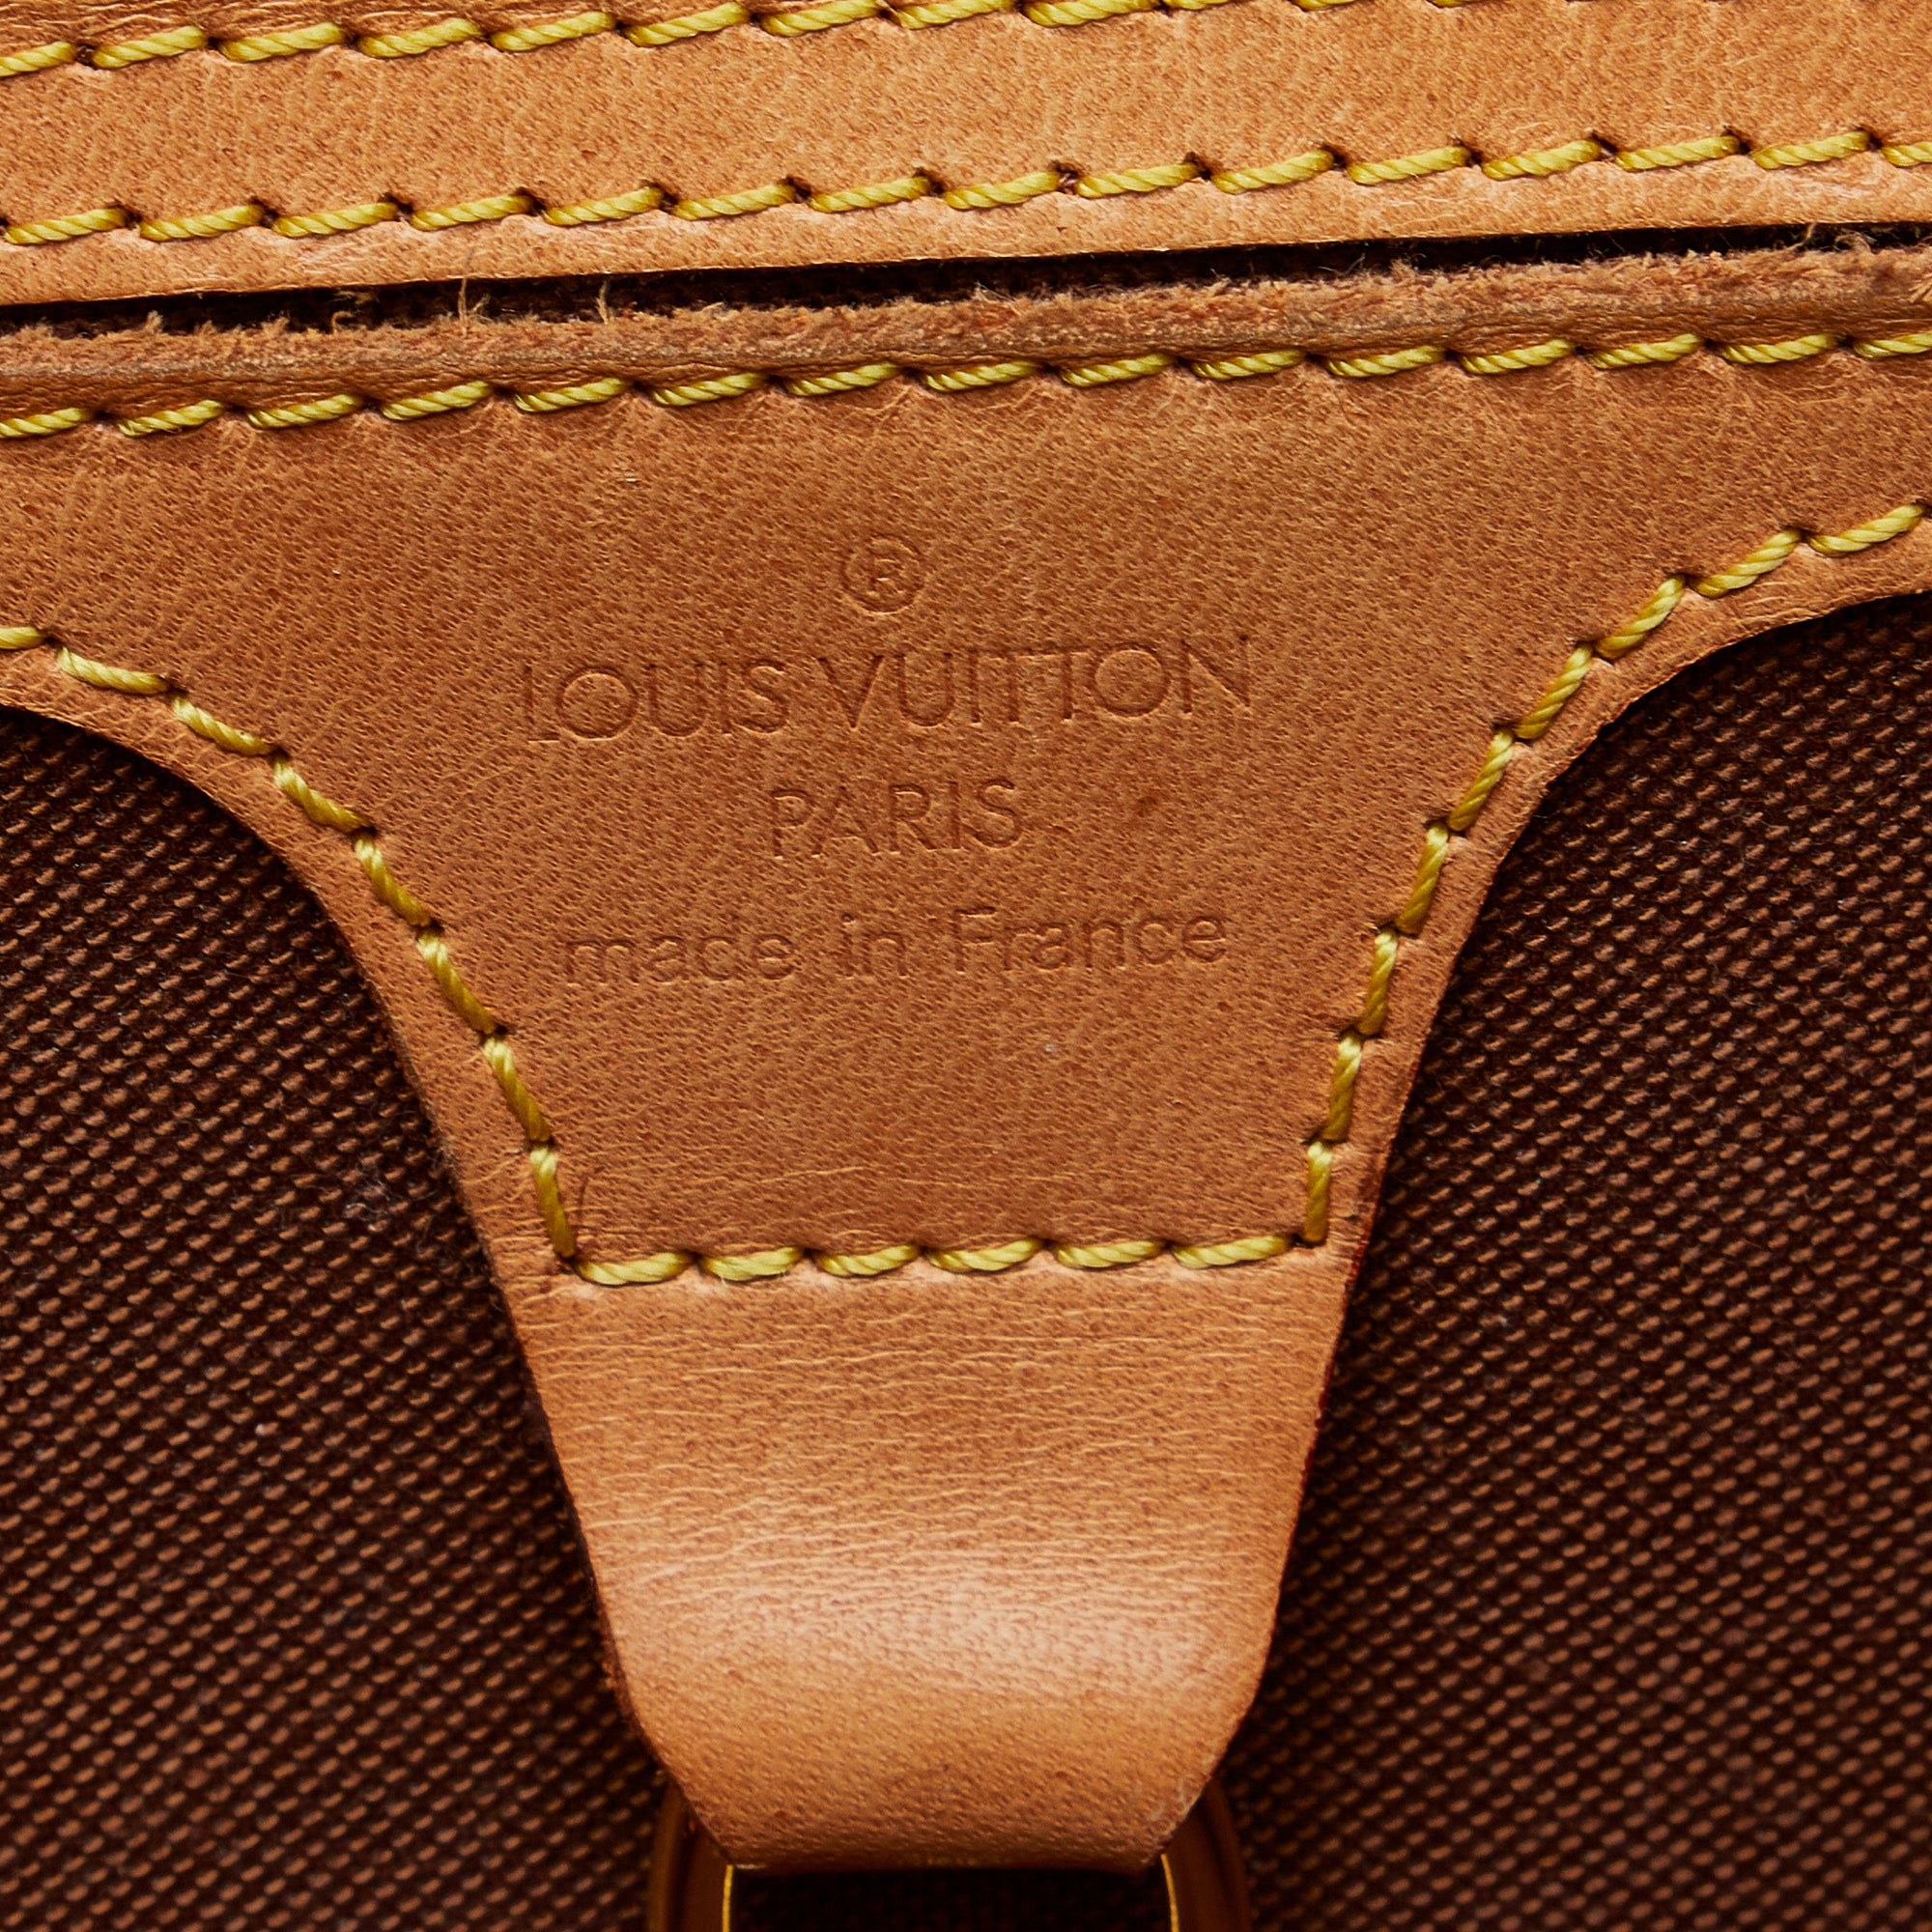 Louis Vuitton authentic Ellipse monogram key, bag